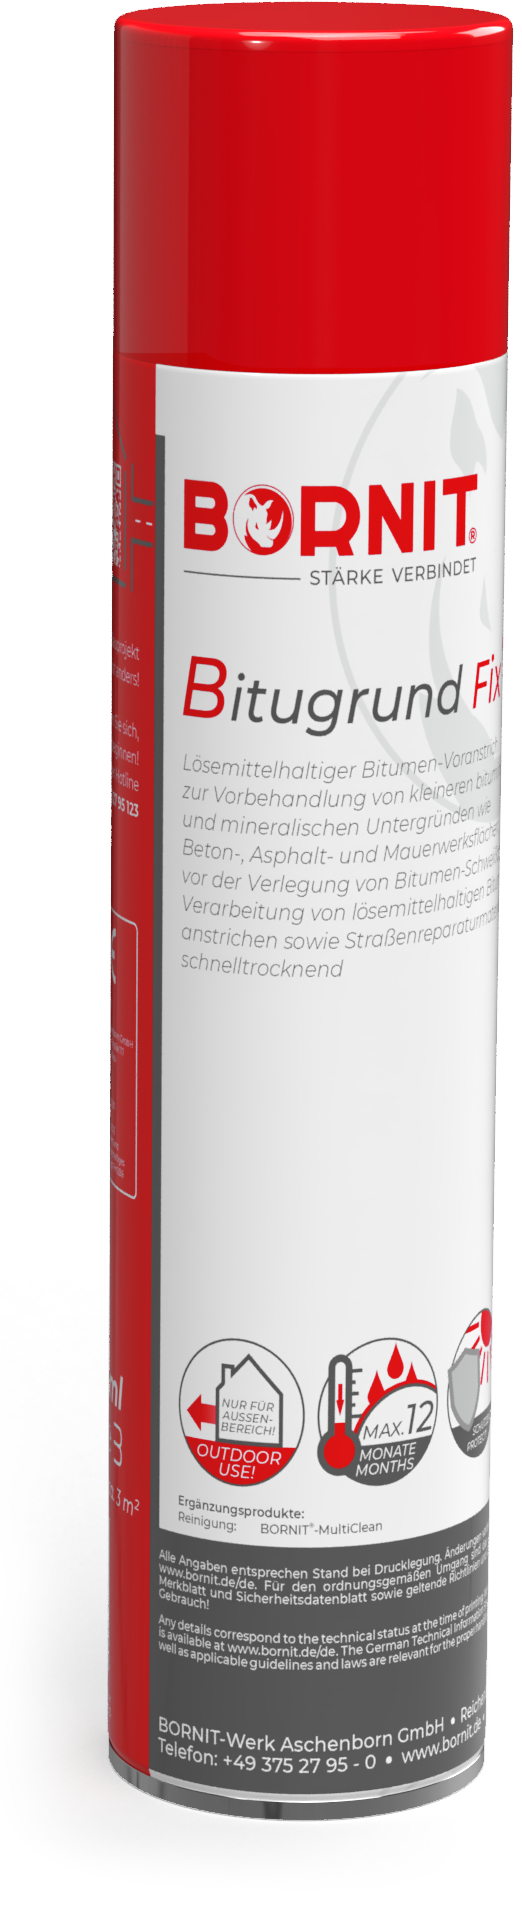 Bornit Bitugrund Fix - Bit. VA-Spray 600 ml